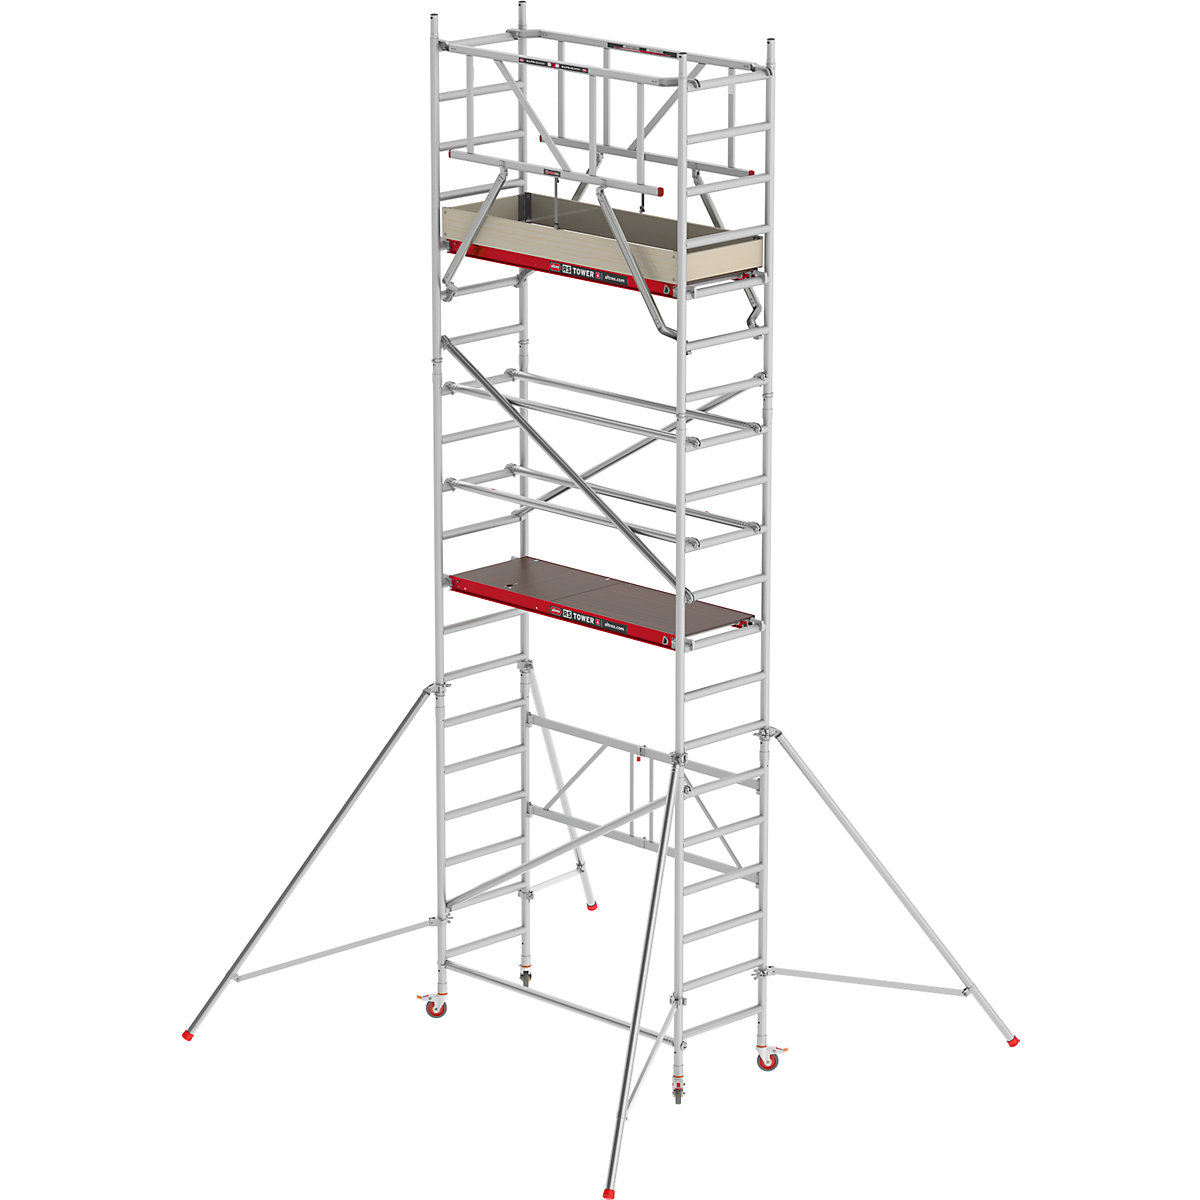 Zimmergerüst RS 44-POWER Altrex, Holzplattform, Länge 1,85 m, Arbeitshöhe 6,80 m